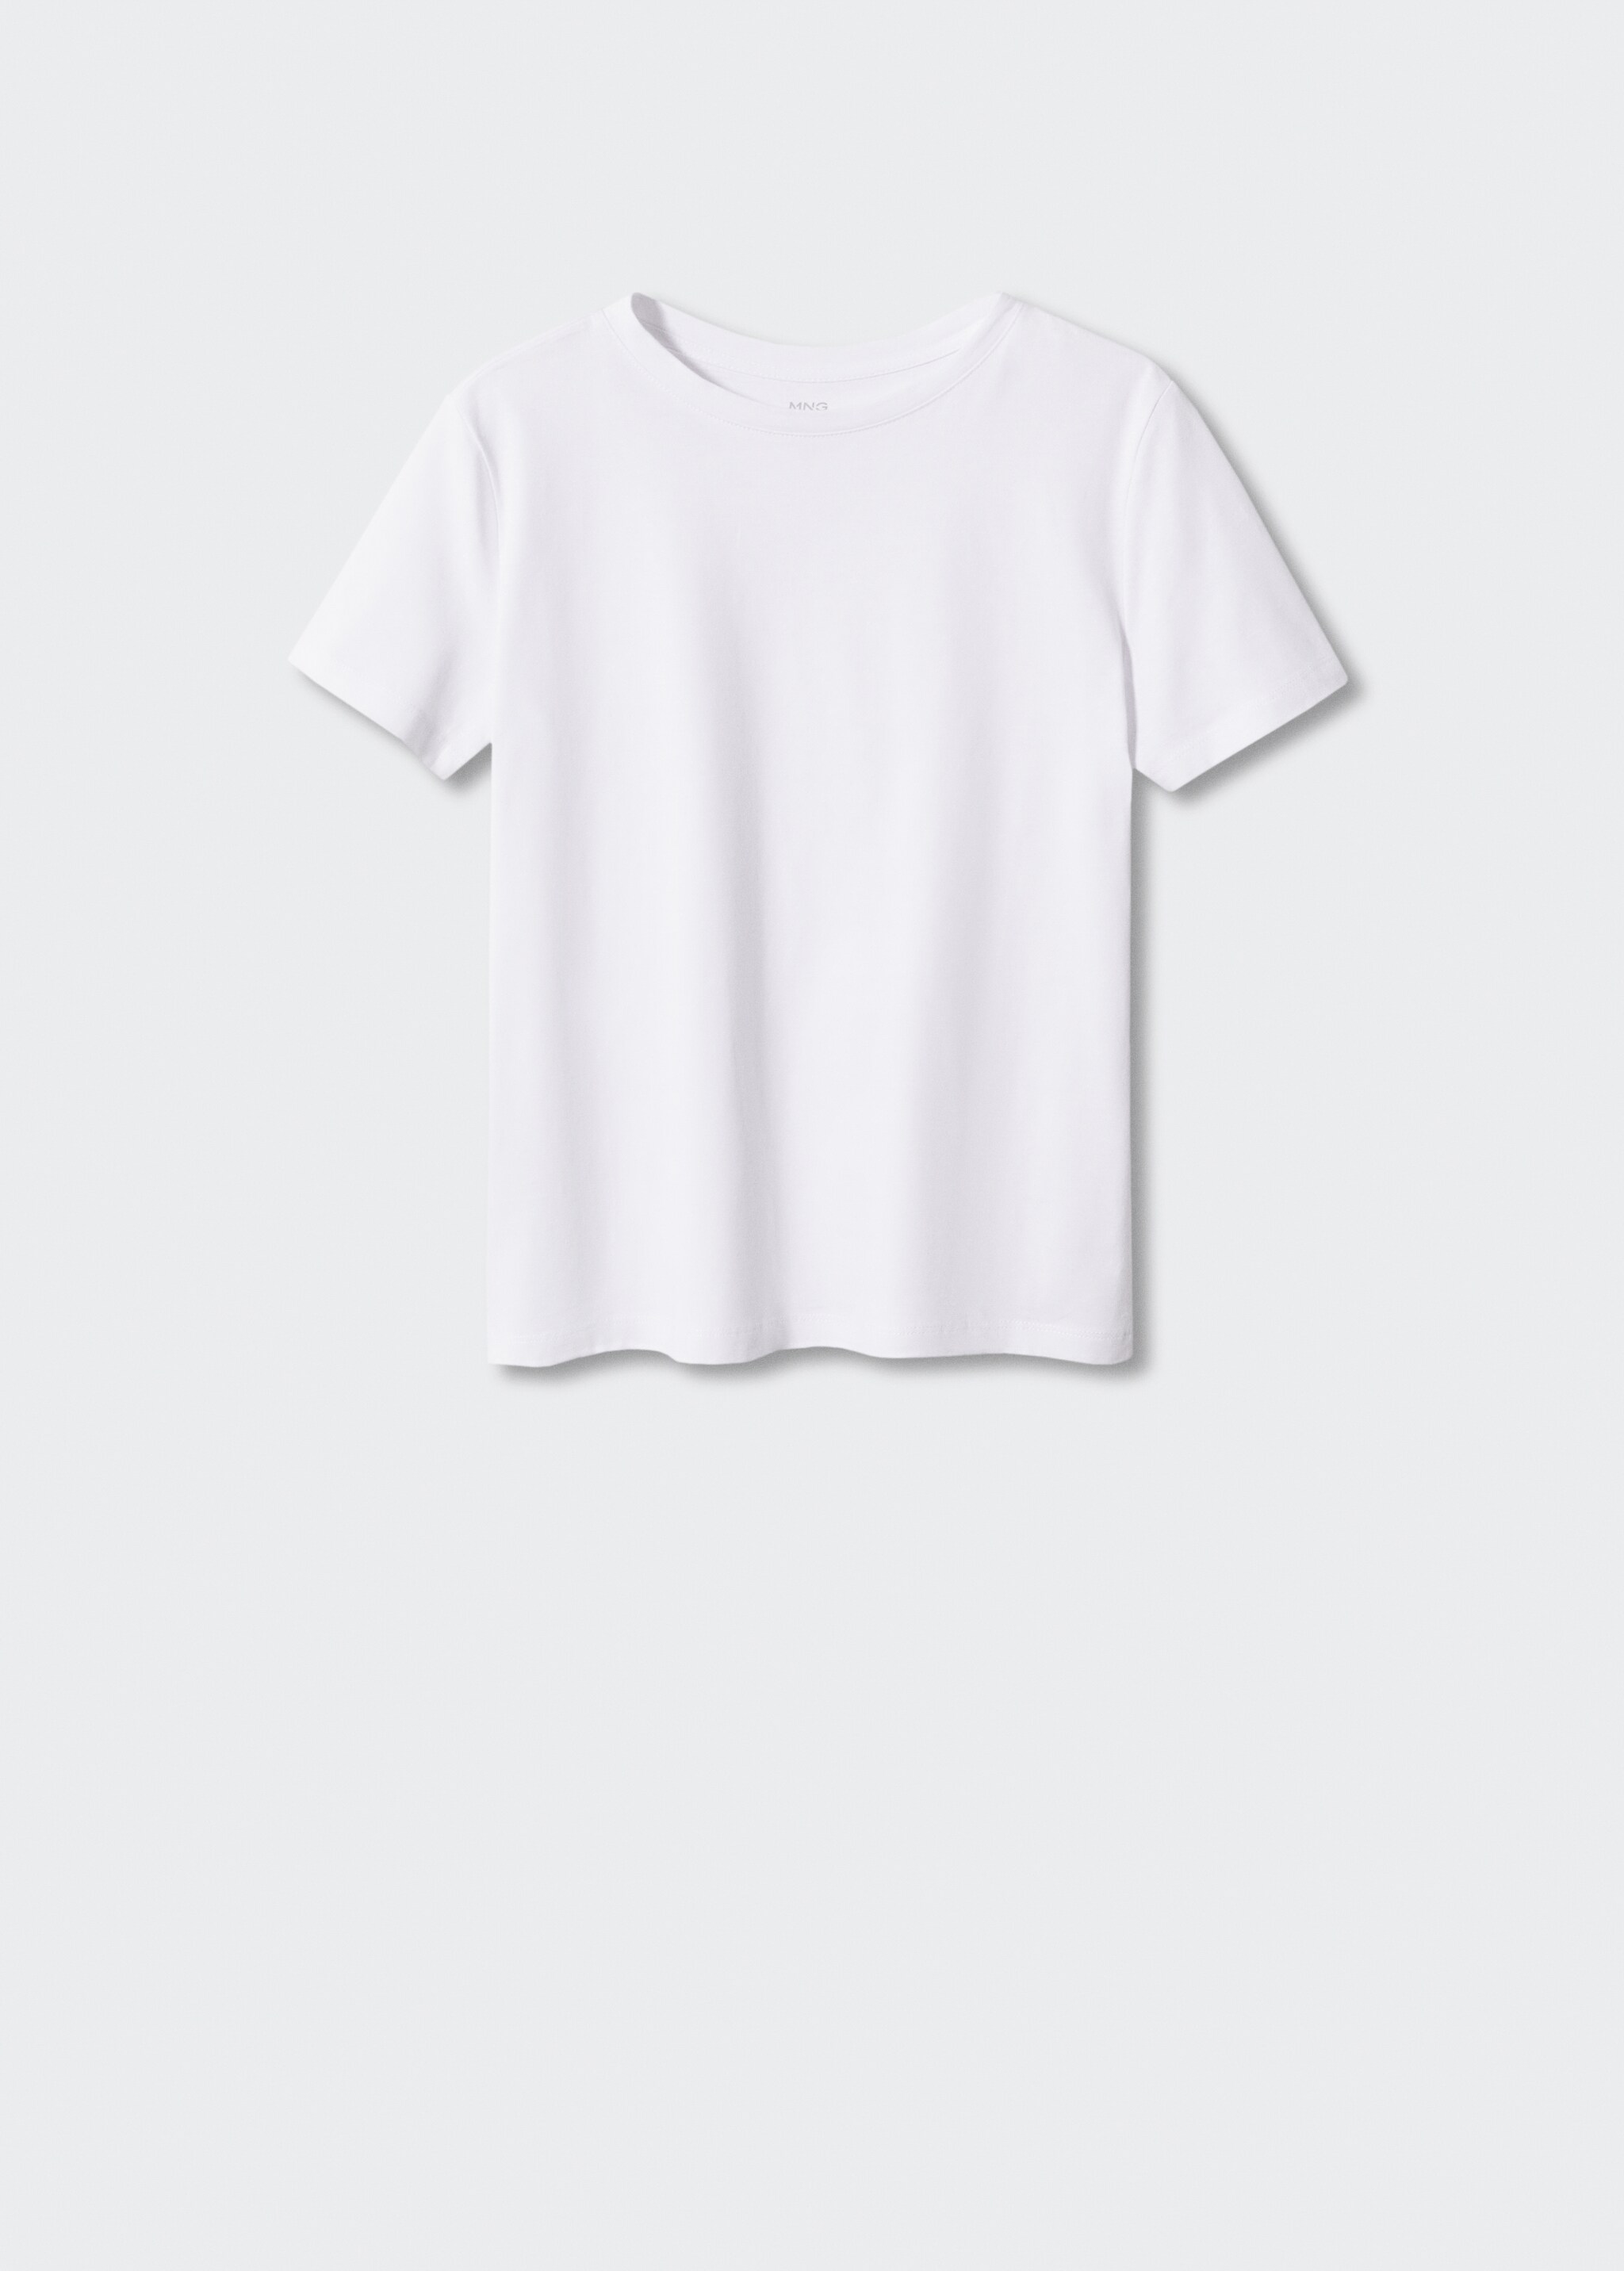 Maglietta 100% cotone  - Articolo senza modello